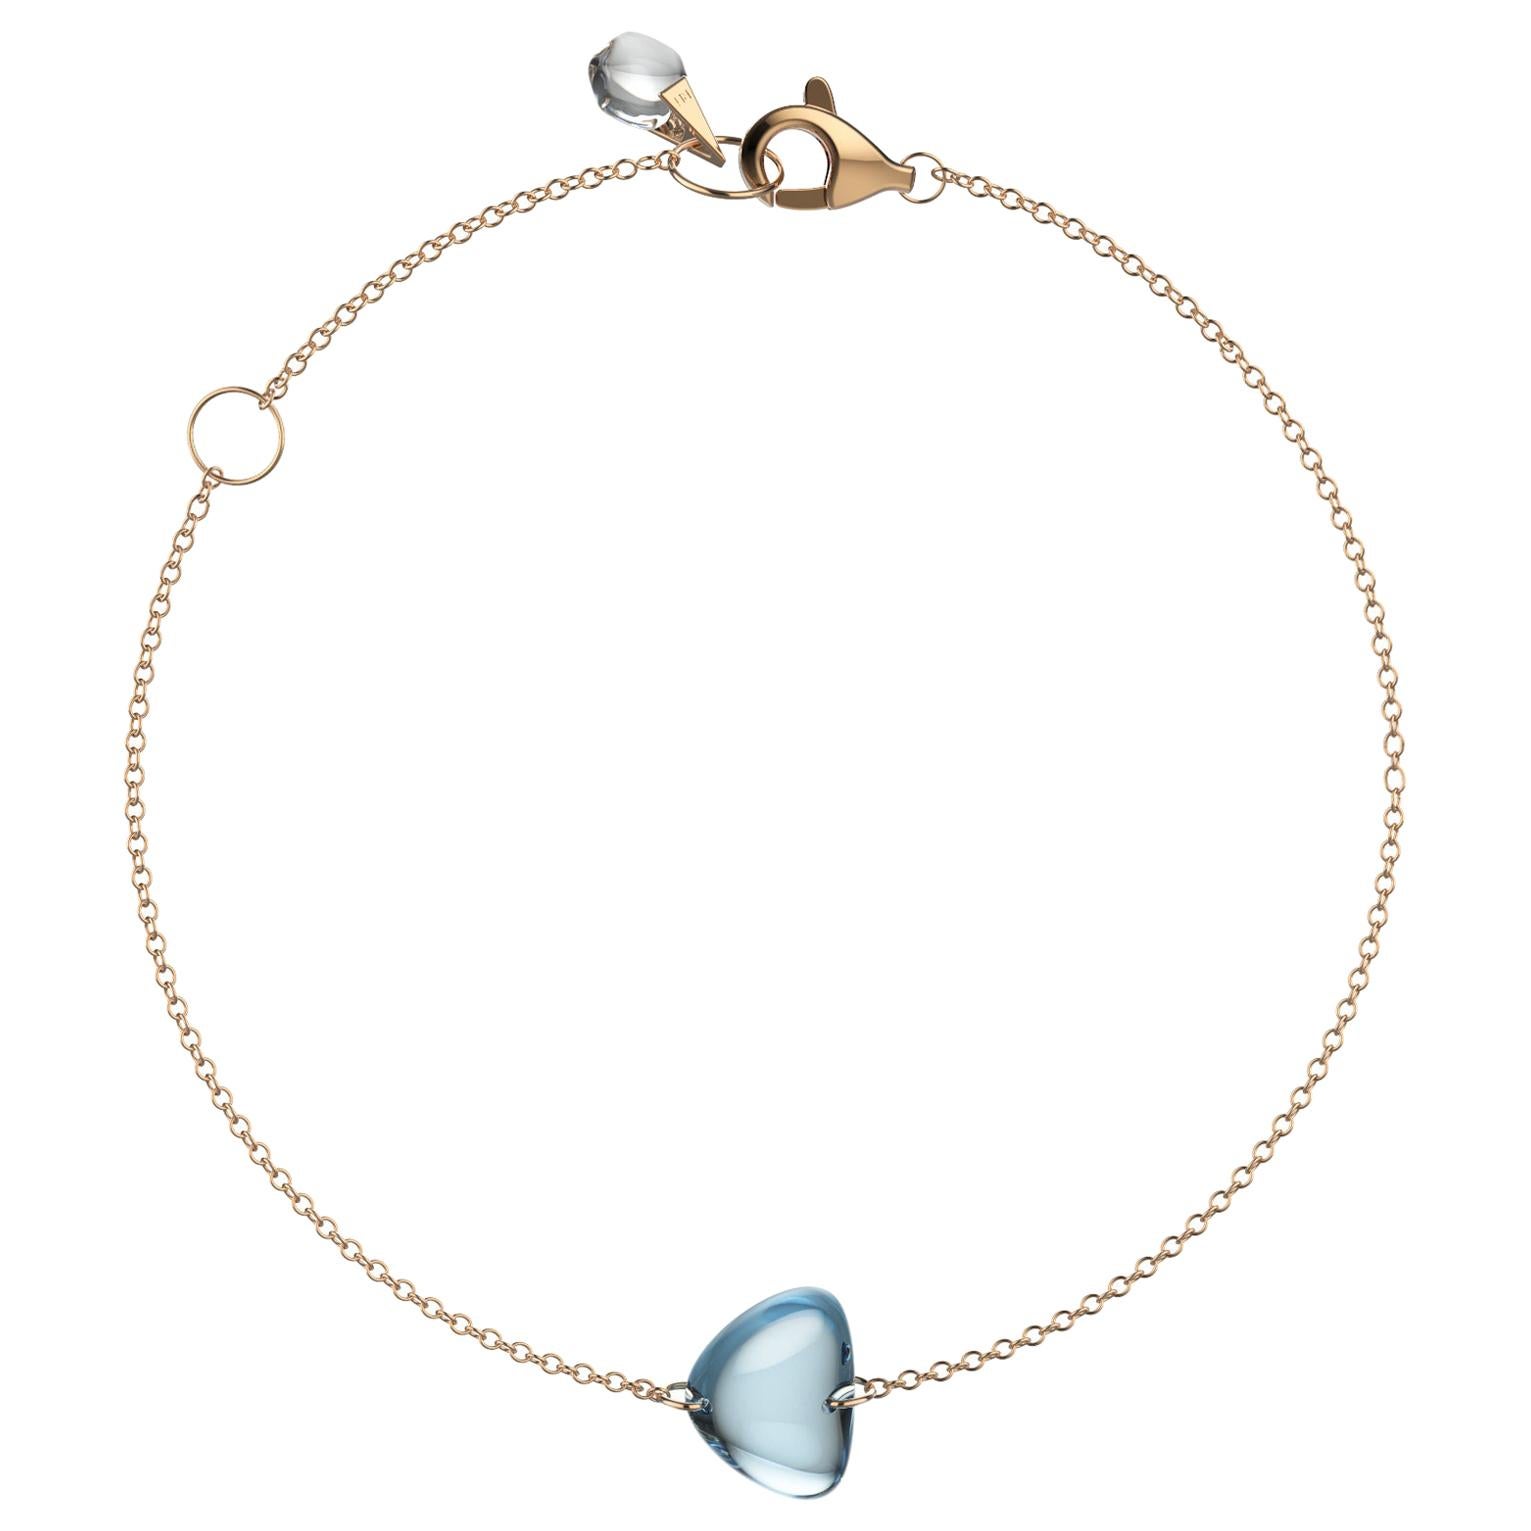 Rebecca Li Crystal Link Bracelet, 18 Karat Rose Gold with Blue Topaz and Crystal